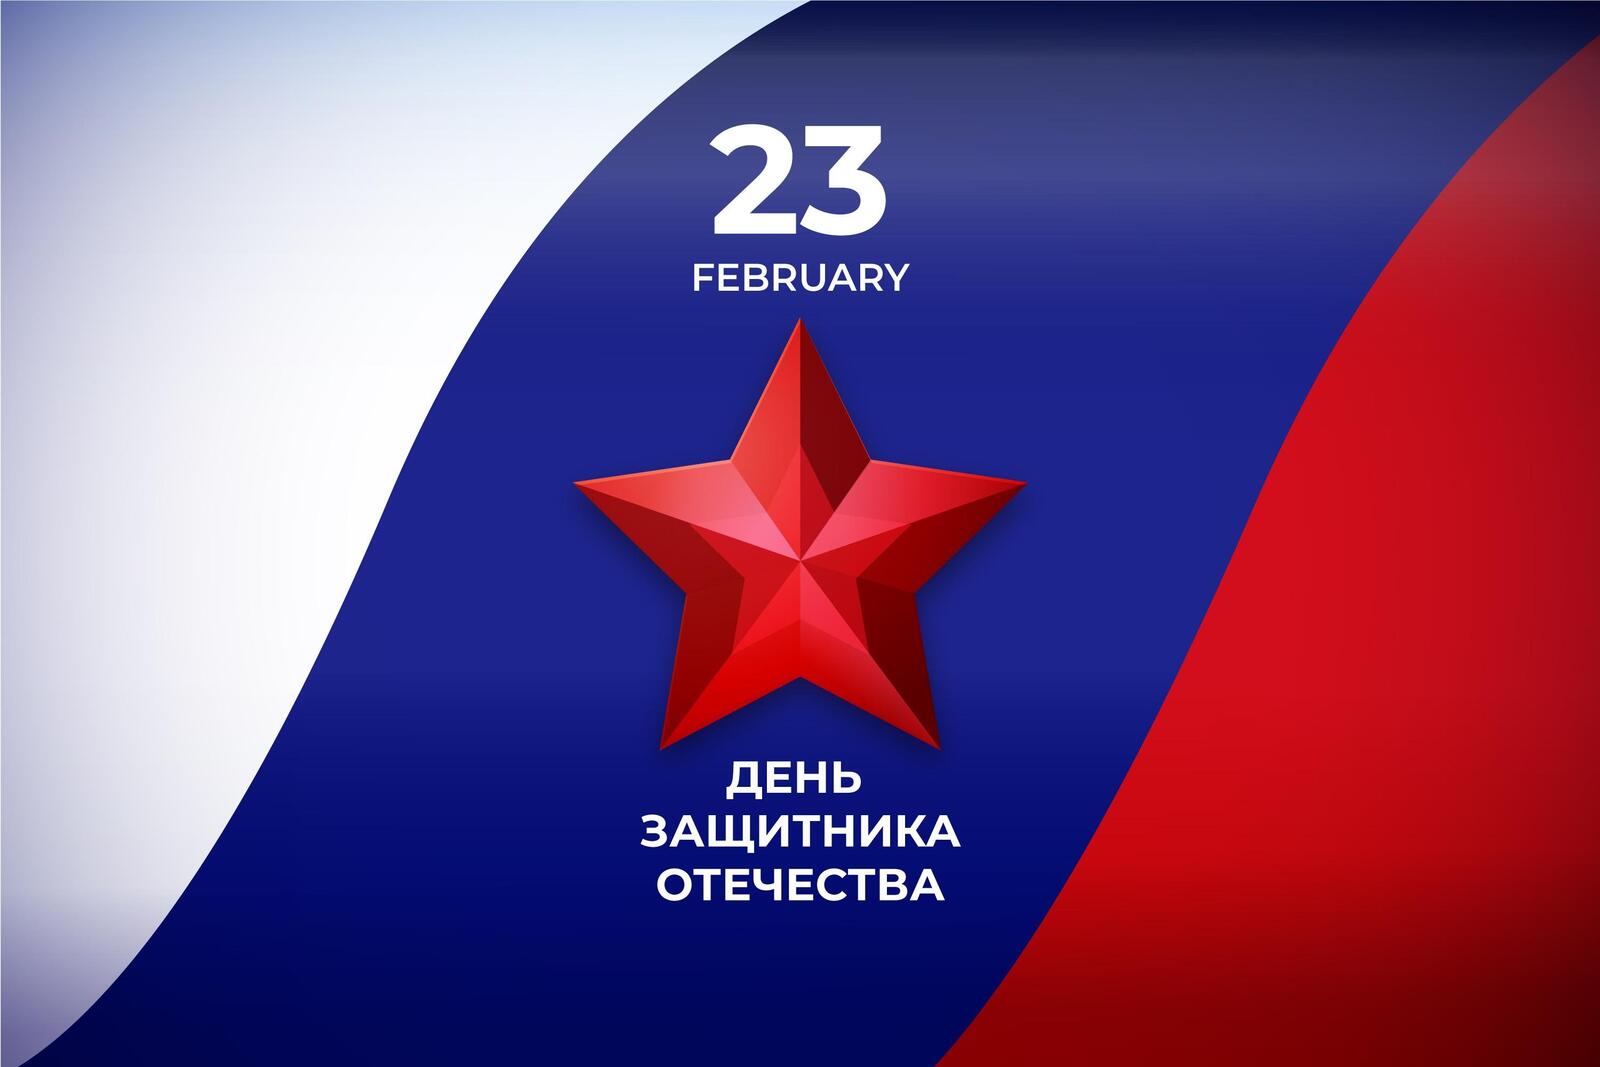 Бесплатное фото 23 февраля на фоне российского флага